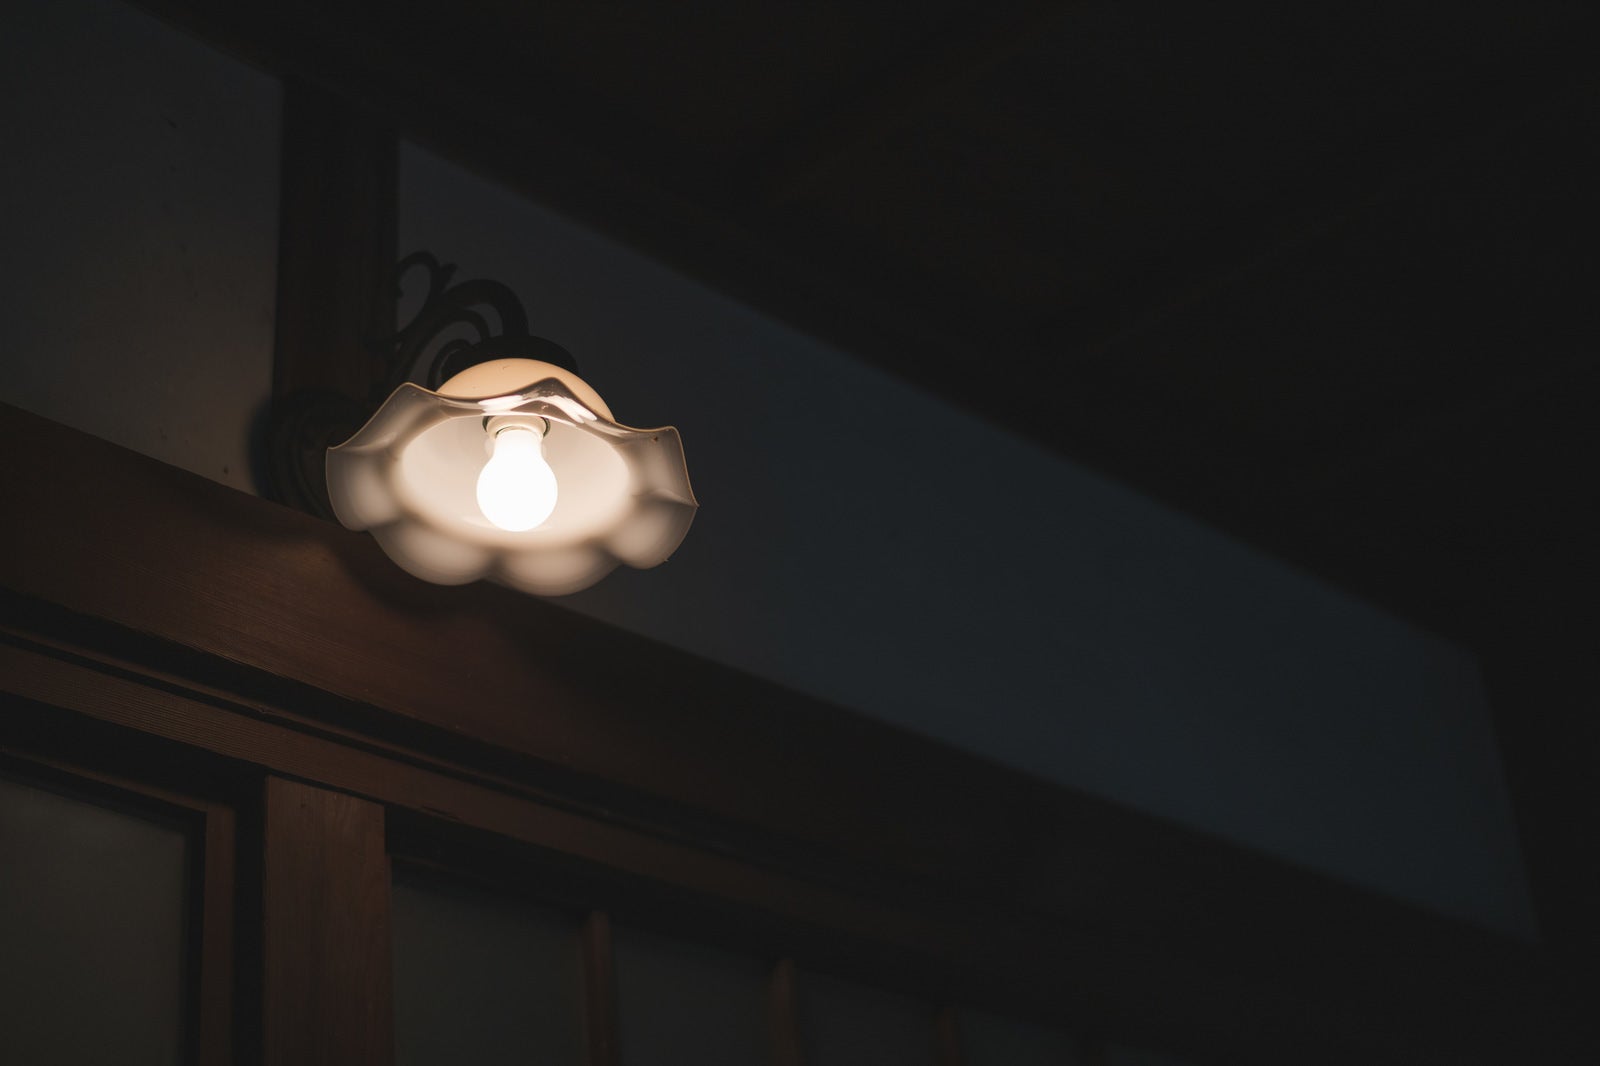 「明かりを灯す照明器具」の写真